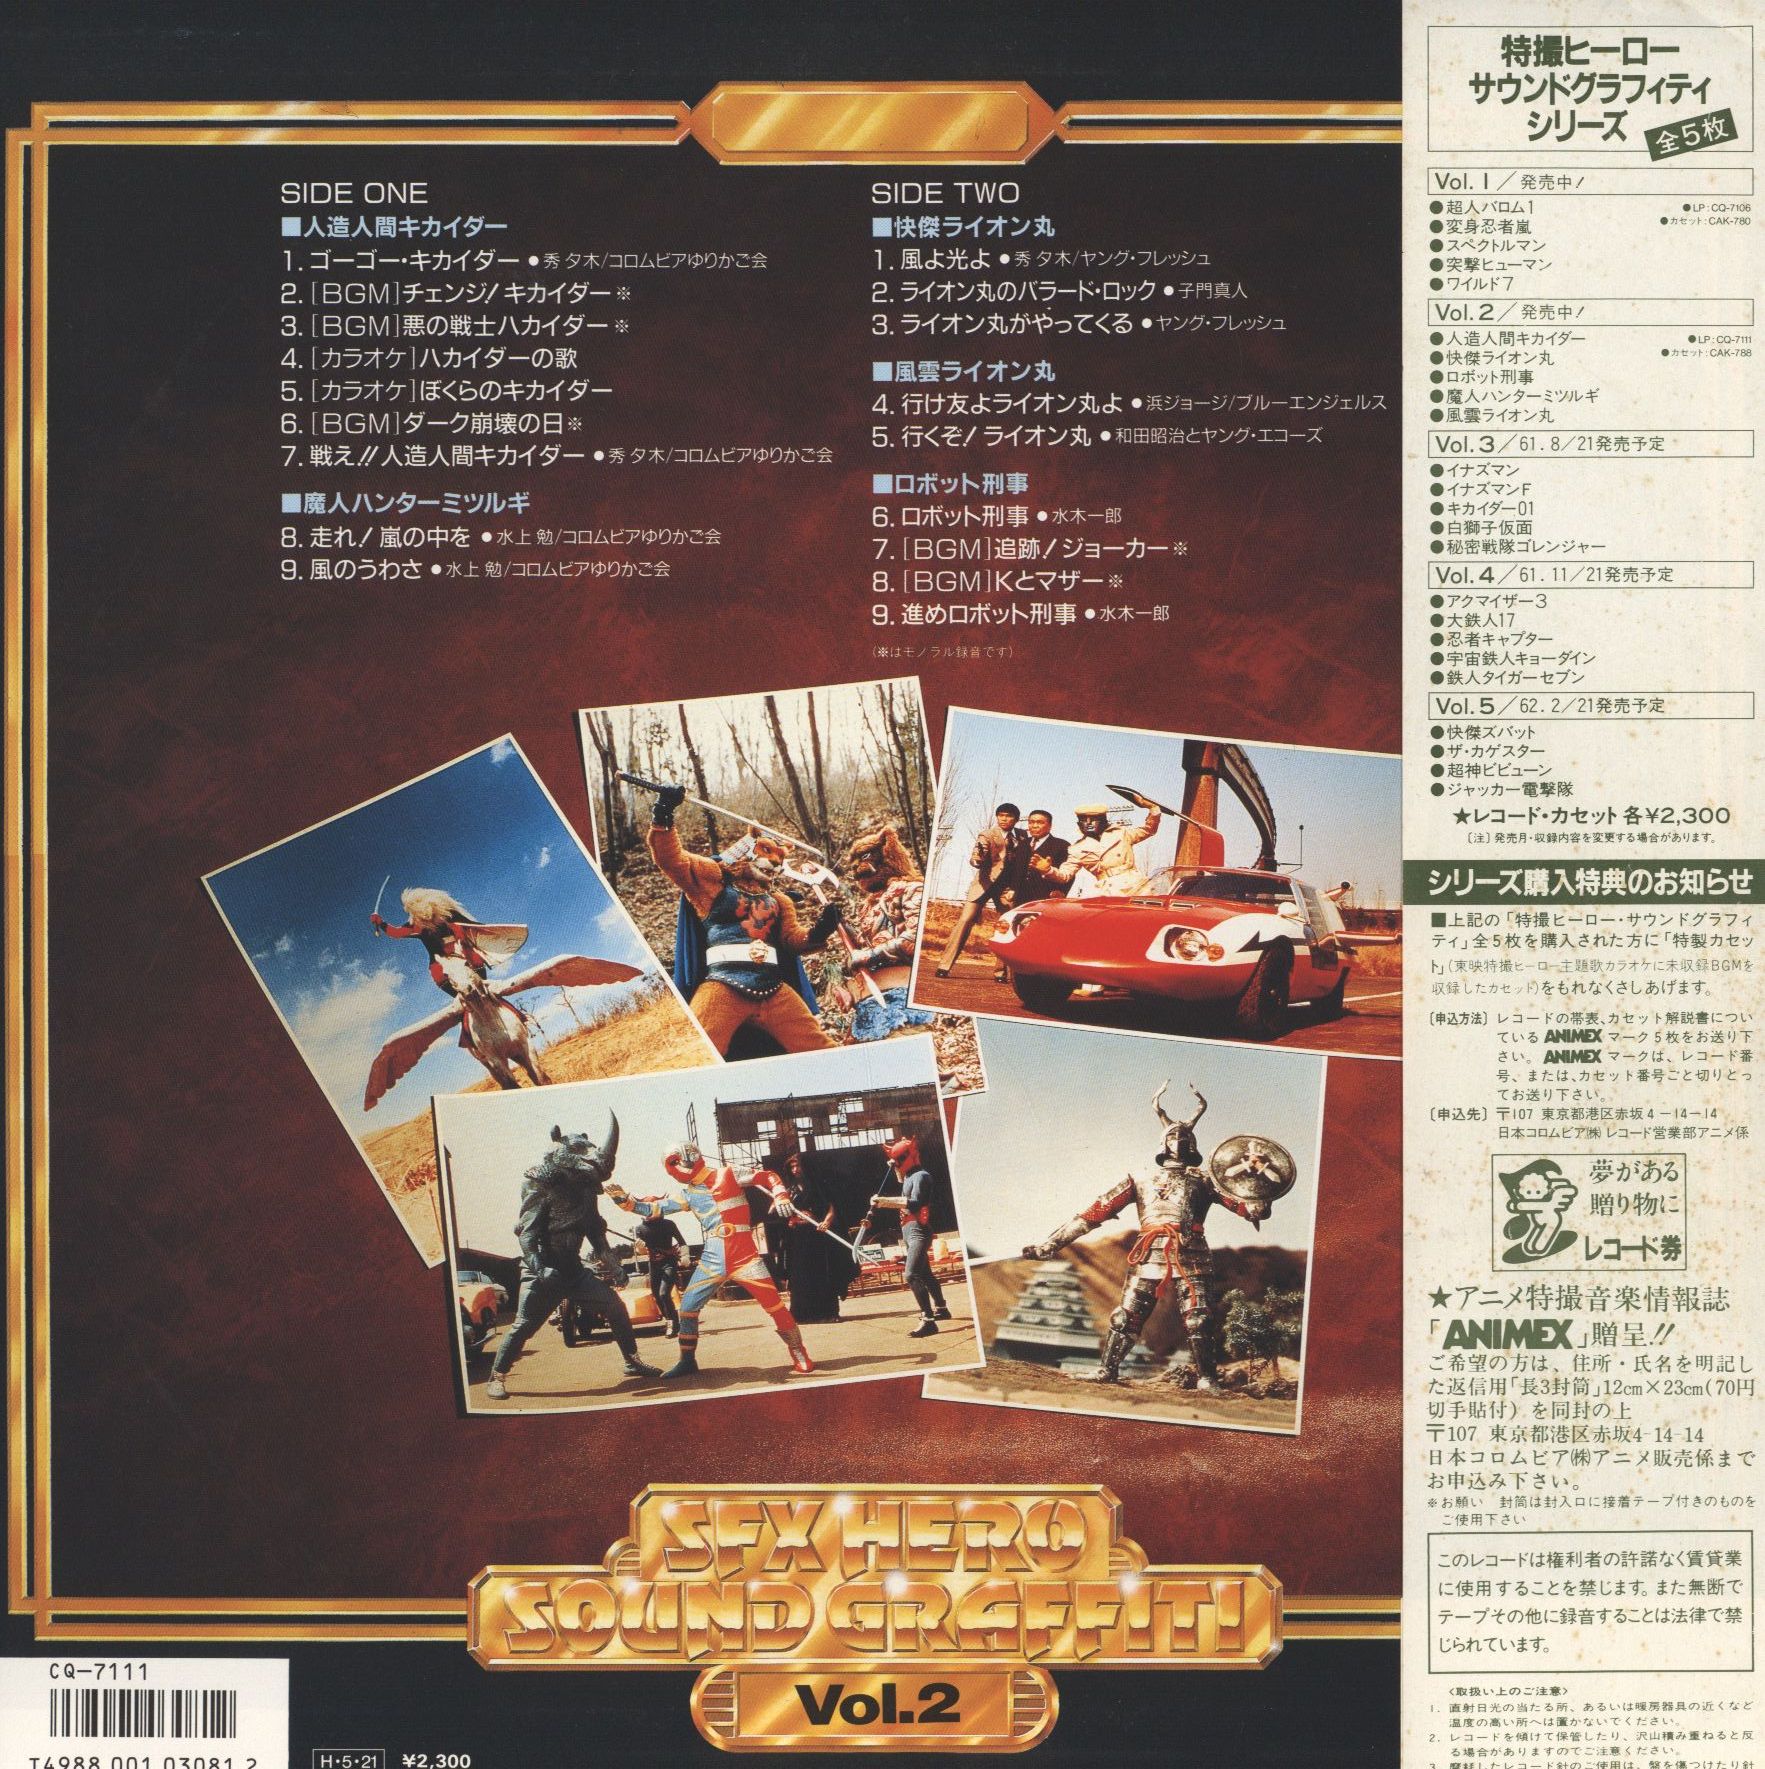 コロムビアレコード CQ-7111 特撮ヒーローサウンドグラフティ Vol.2 